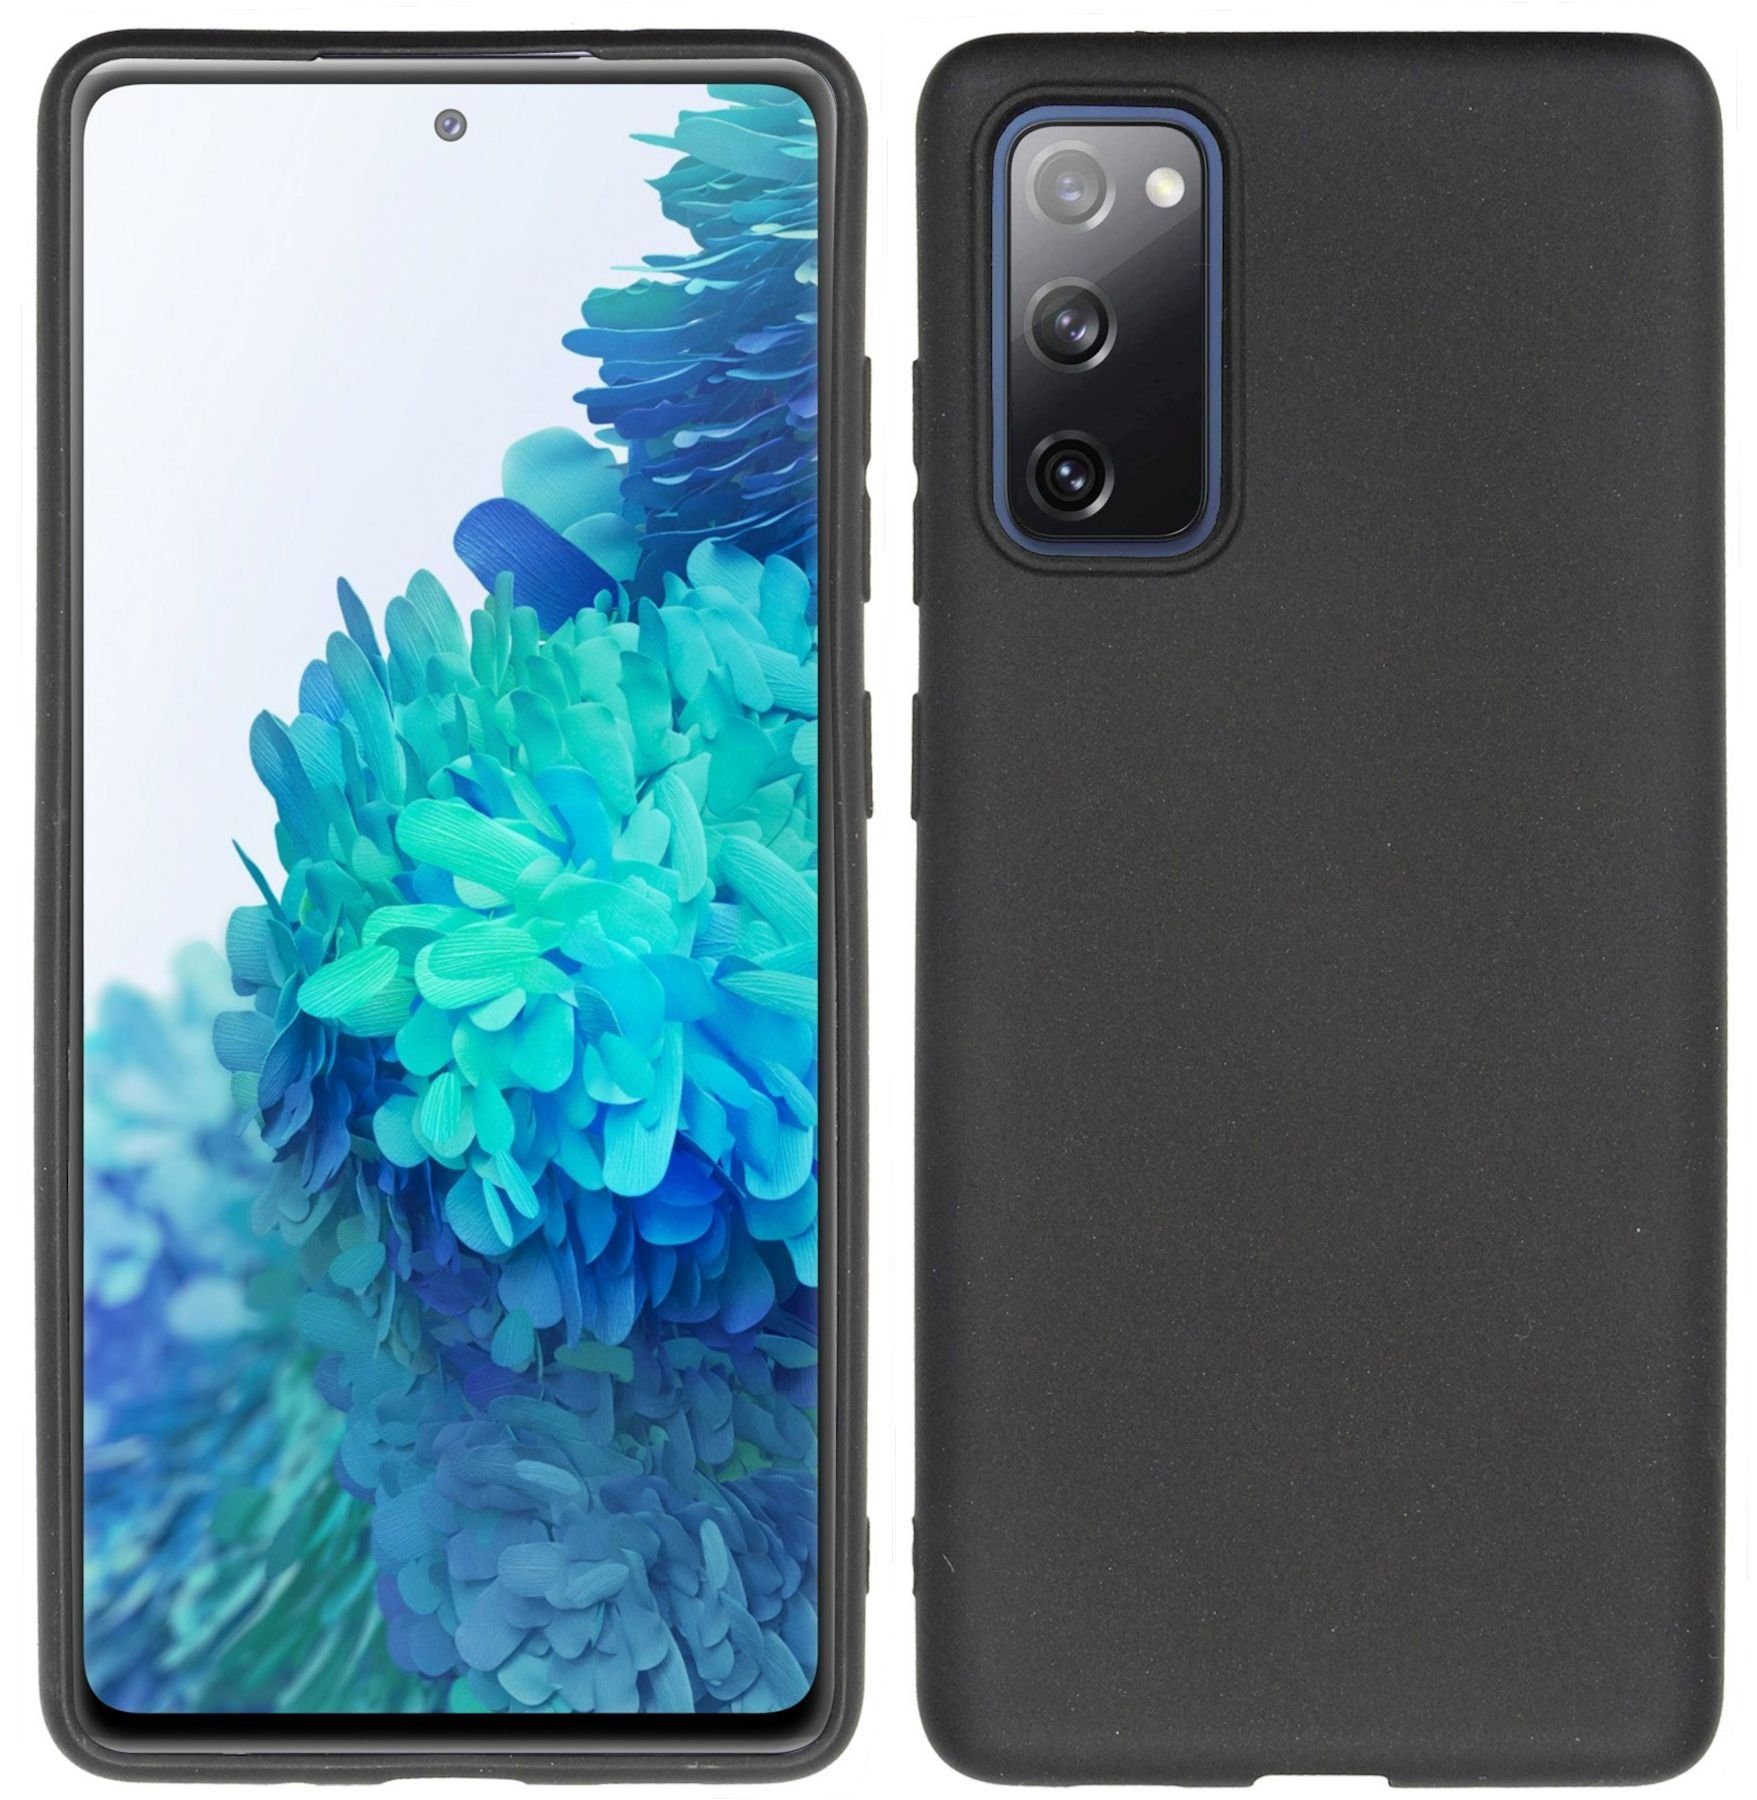 S20 5G Handy-Hülle stoßfest Schutz Case Silikon dunkelblau dünn und griffig Samsung Silicone Smartphone Cover EF-PG980 für Galaxy S20